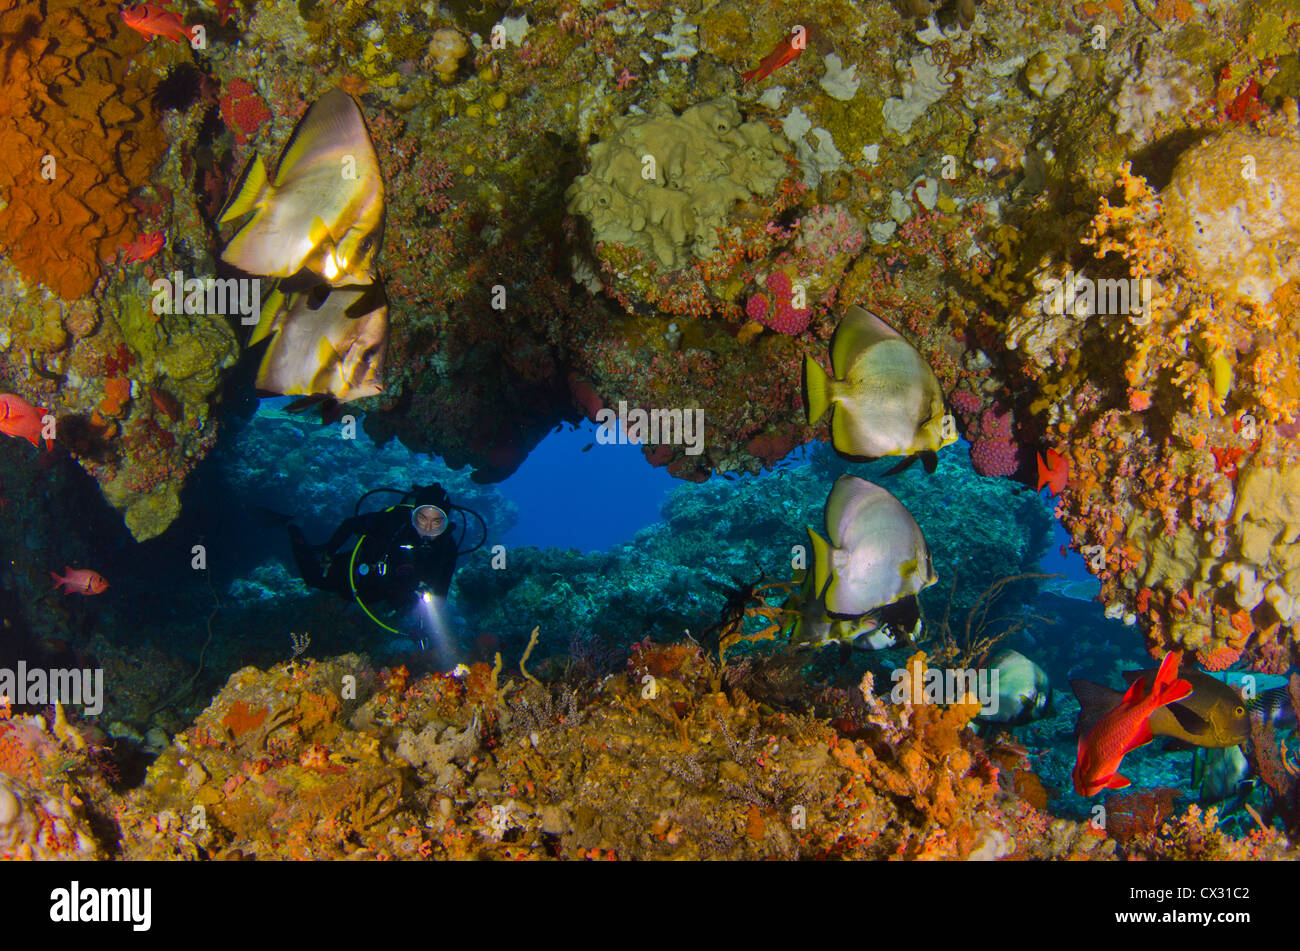 La vie sous-marins, Komodo, Indonésie, plongée, plongée, plongeur, grotte, poissons chauve-souris, colorée, de coraux, de l'océan, profond, bleu, eau de mer Banque D'Images